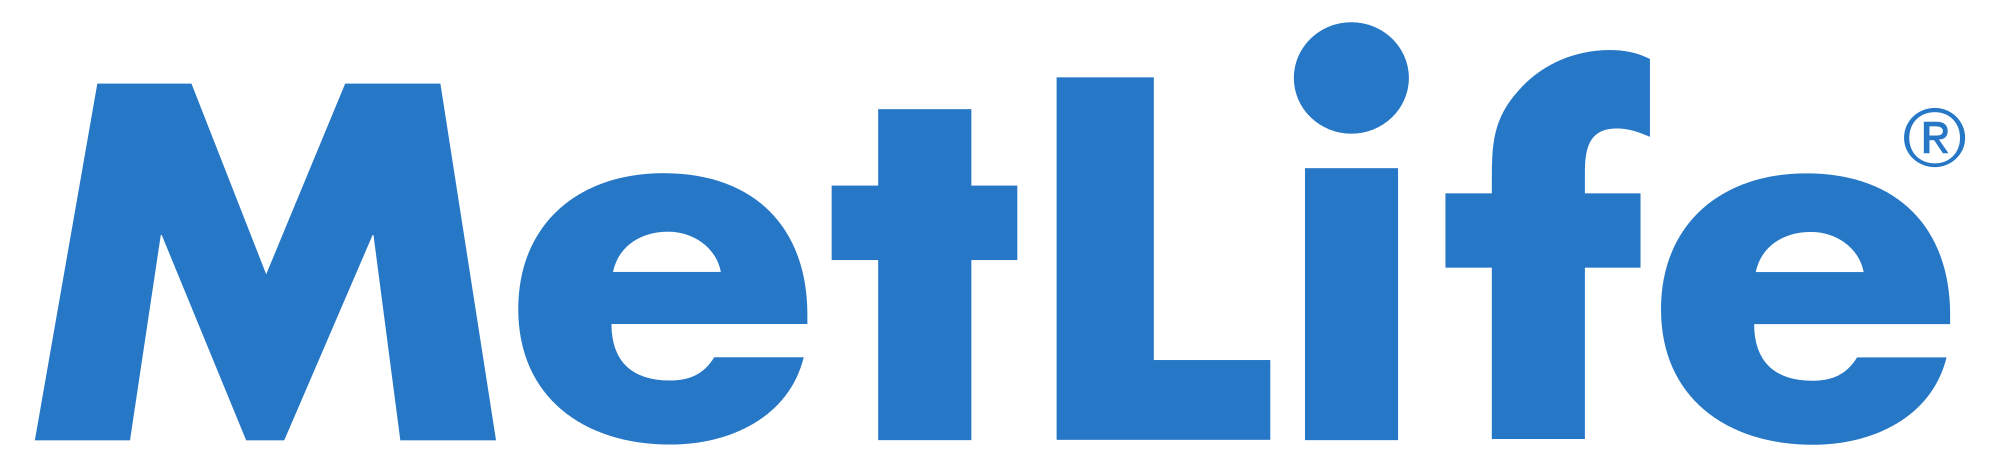 MetLife-Insurance.png